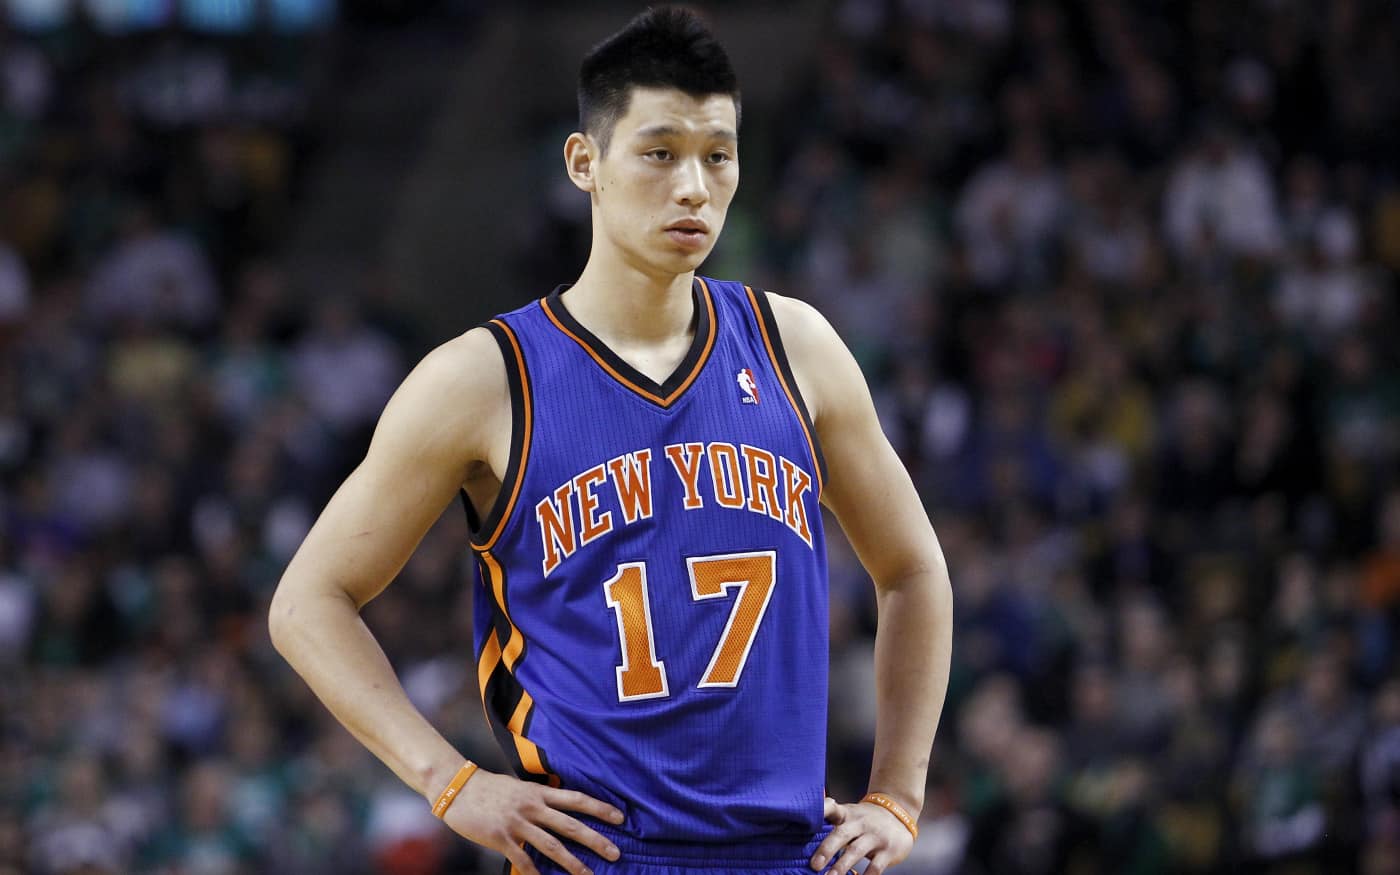 Au plus fort de la Linsanity, Jeremy Lin claquait 38 points face à Kobe Bryant